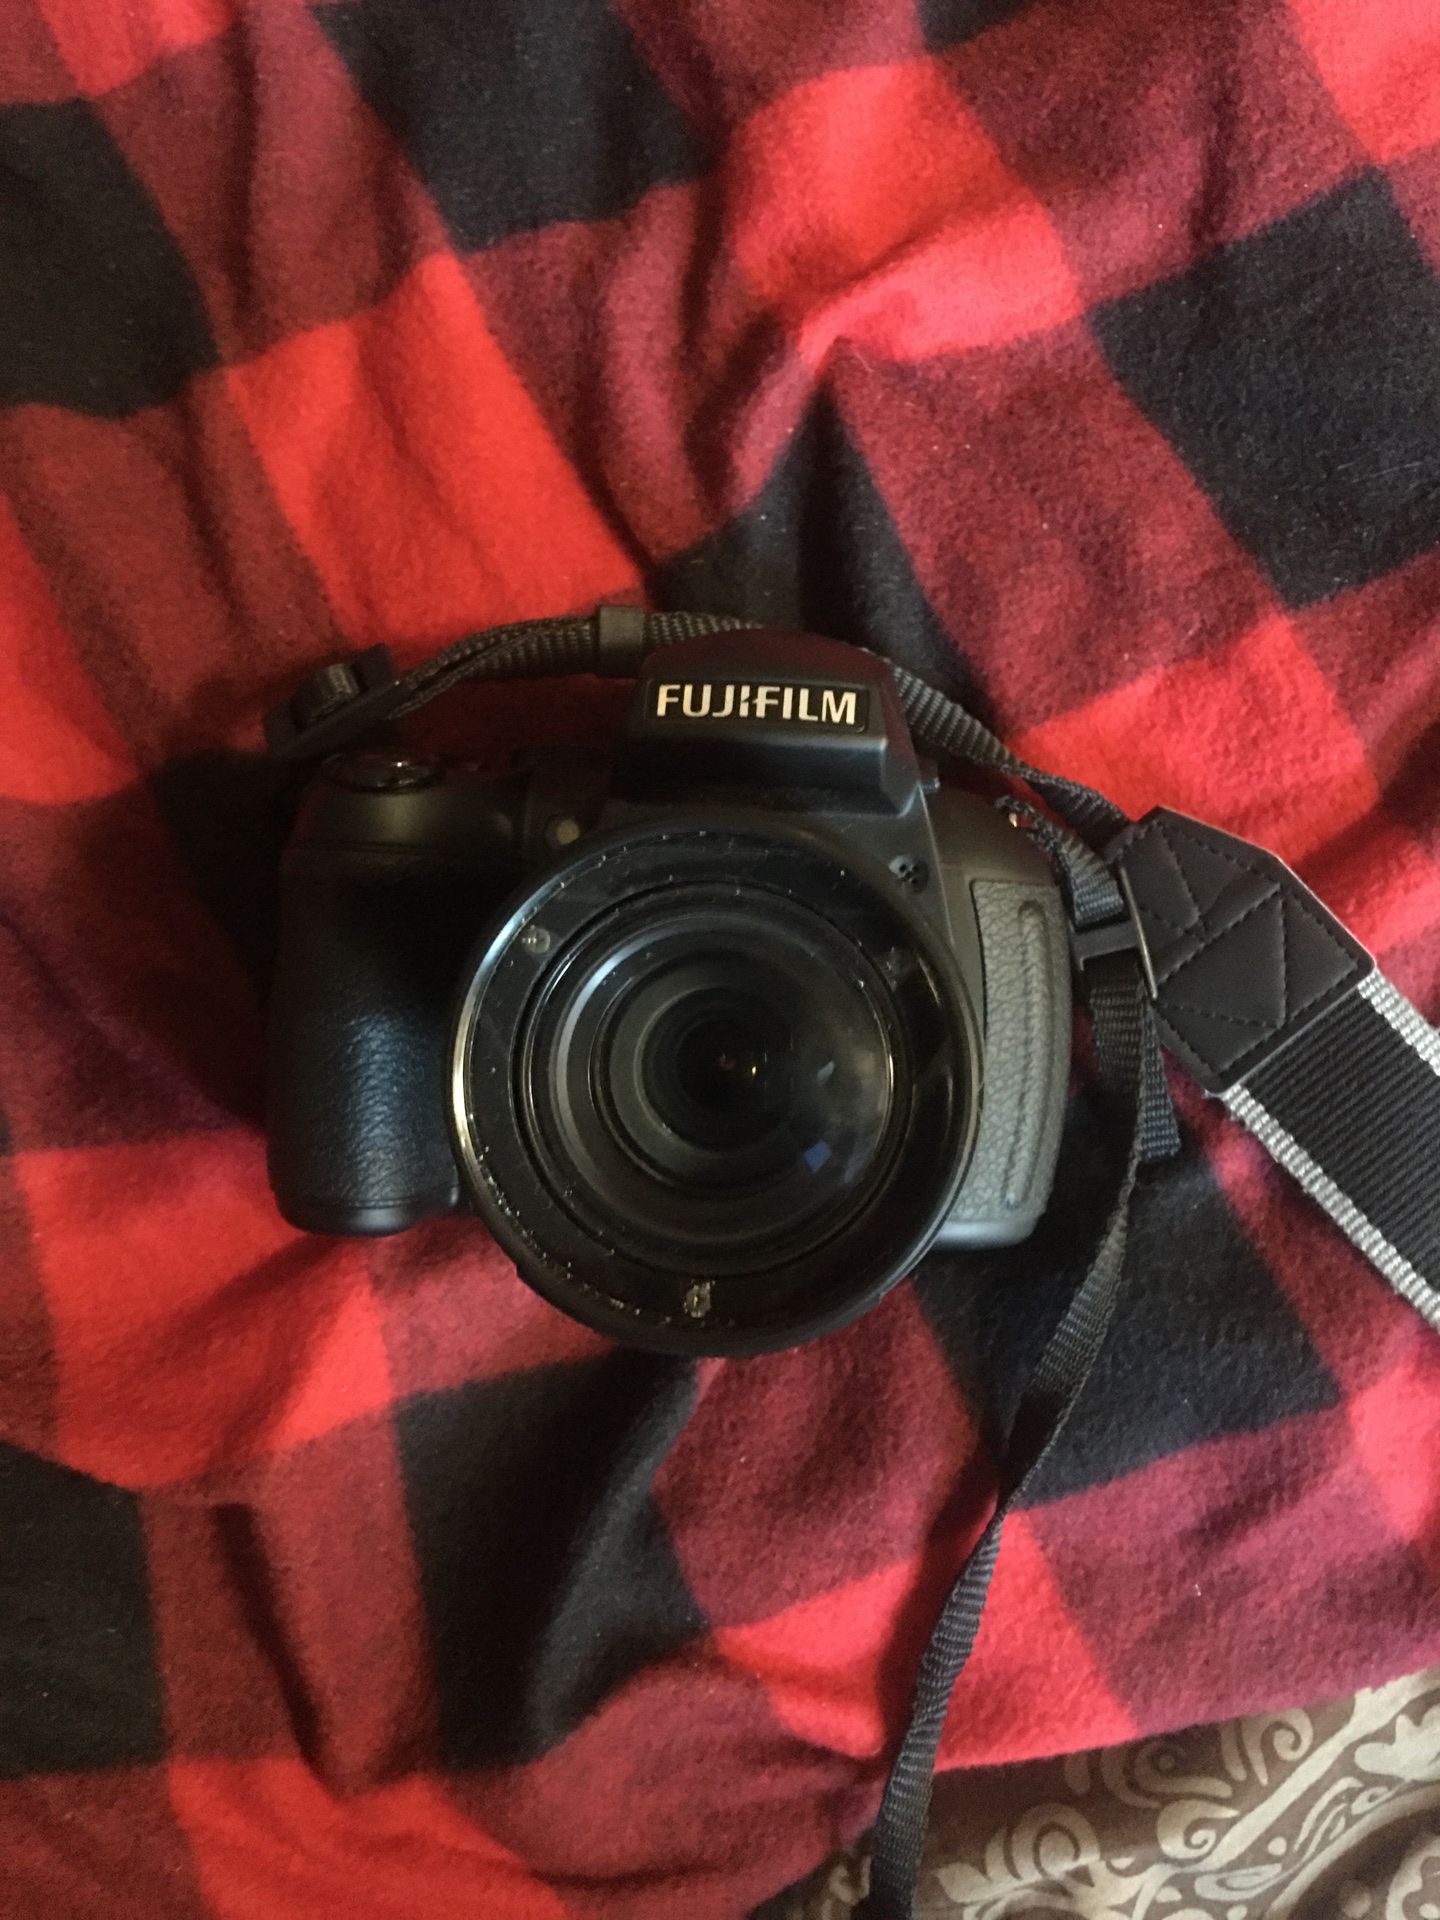 Fuji Film camera